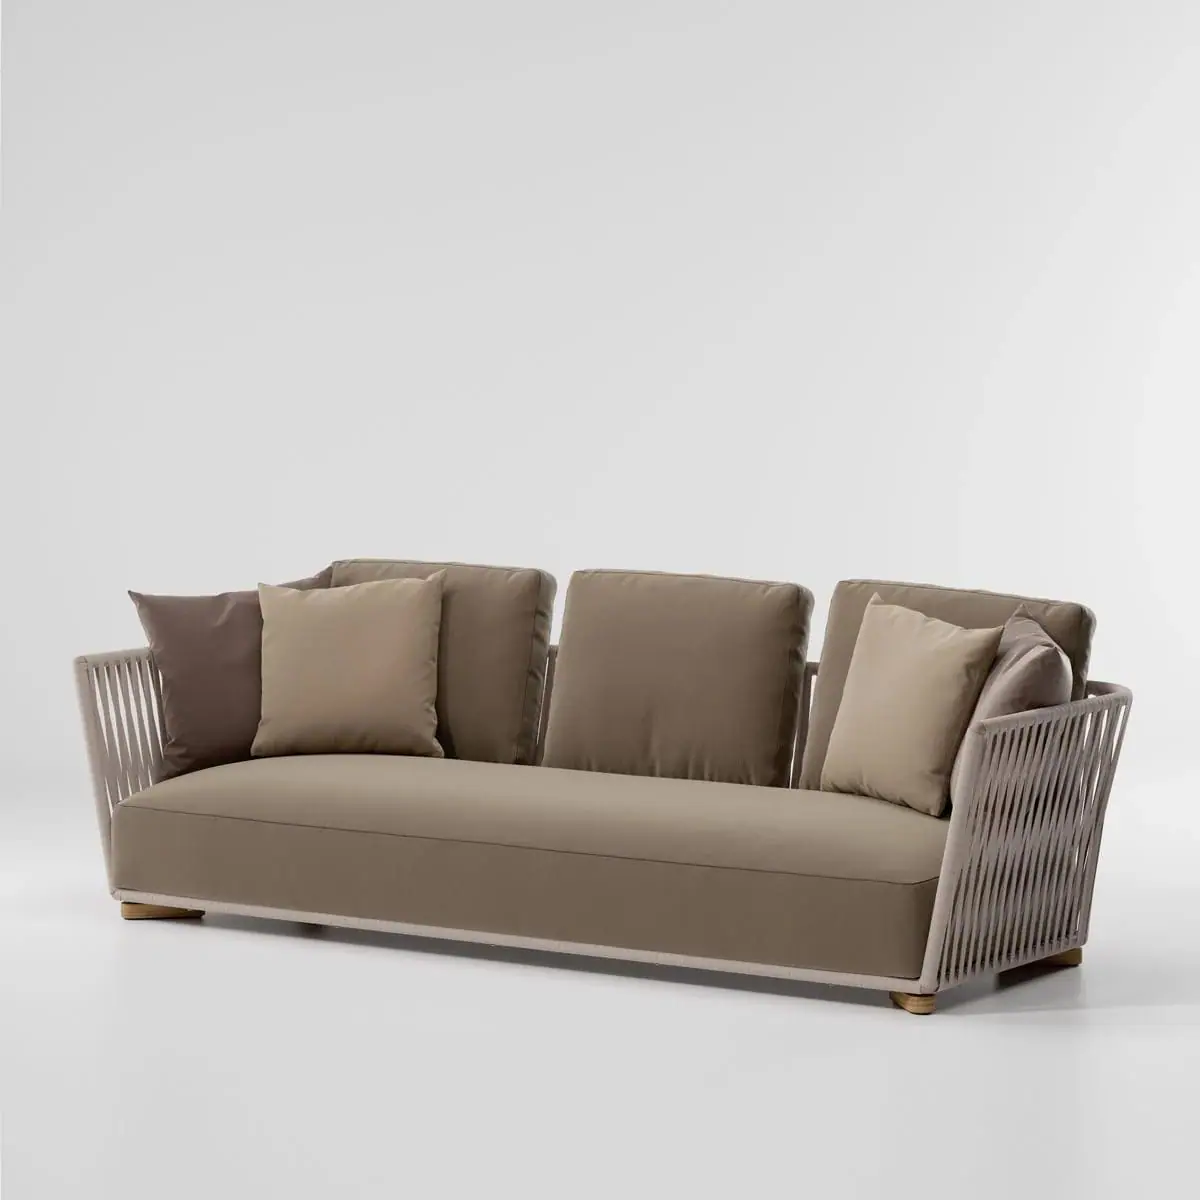 kettal-granbitta-sofa01